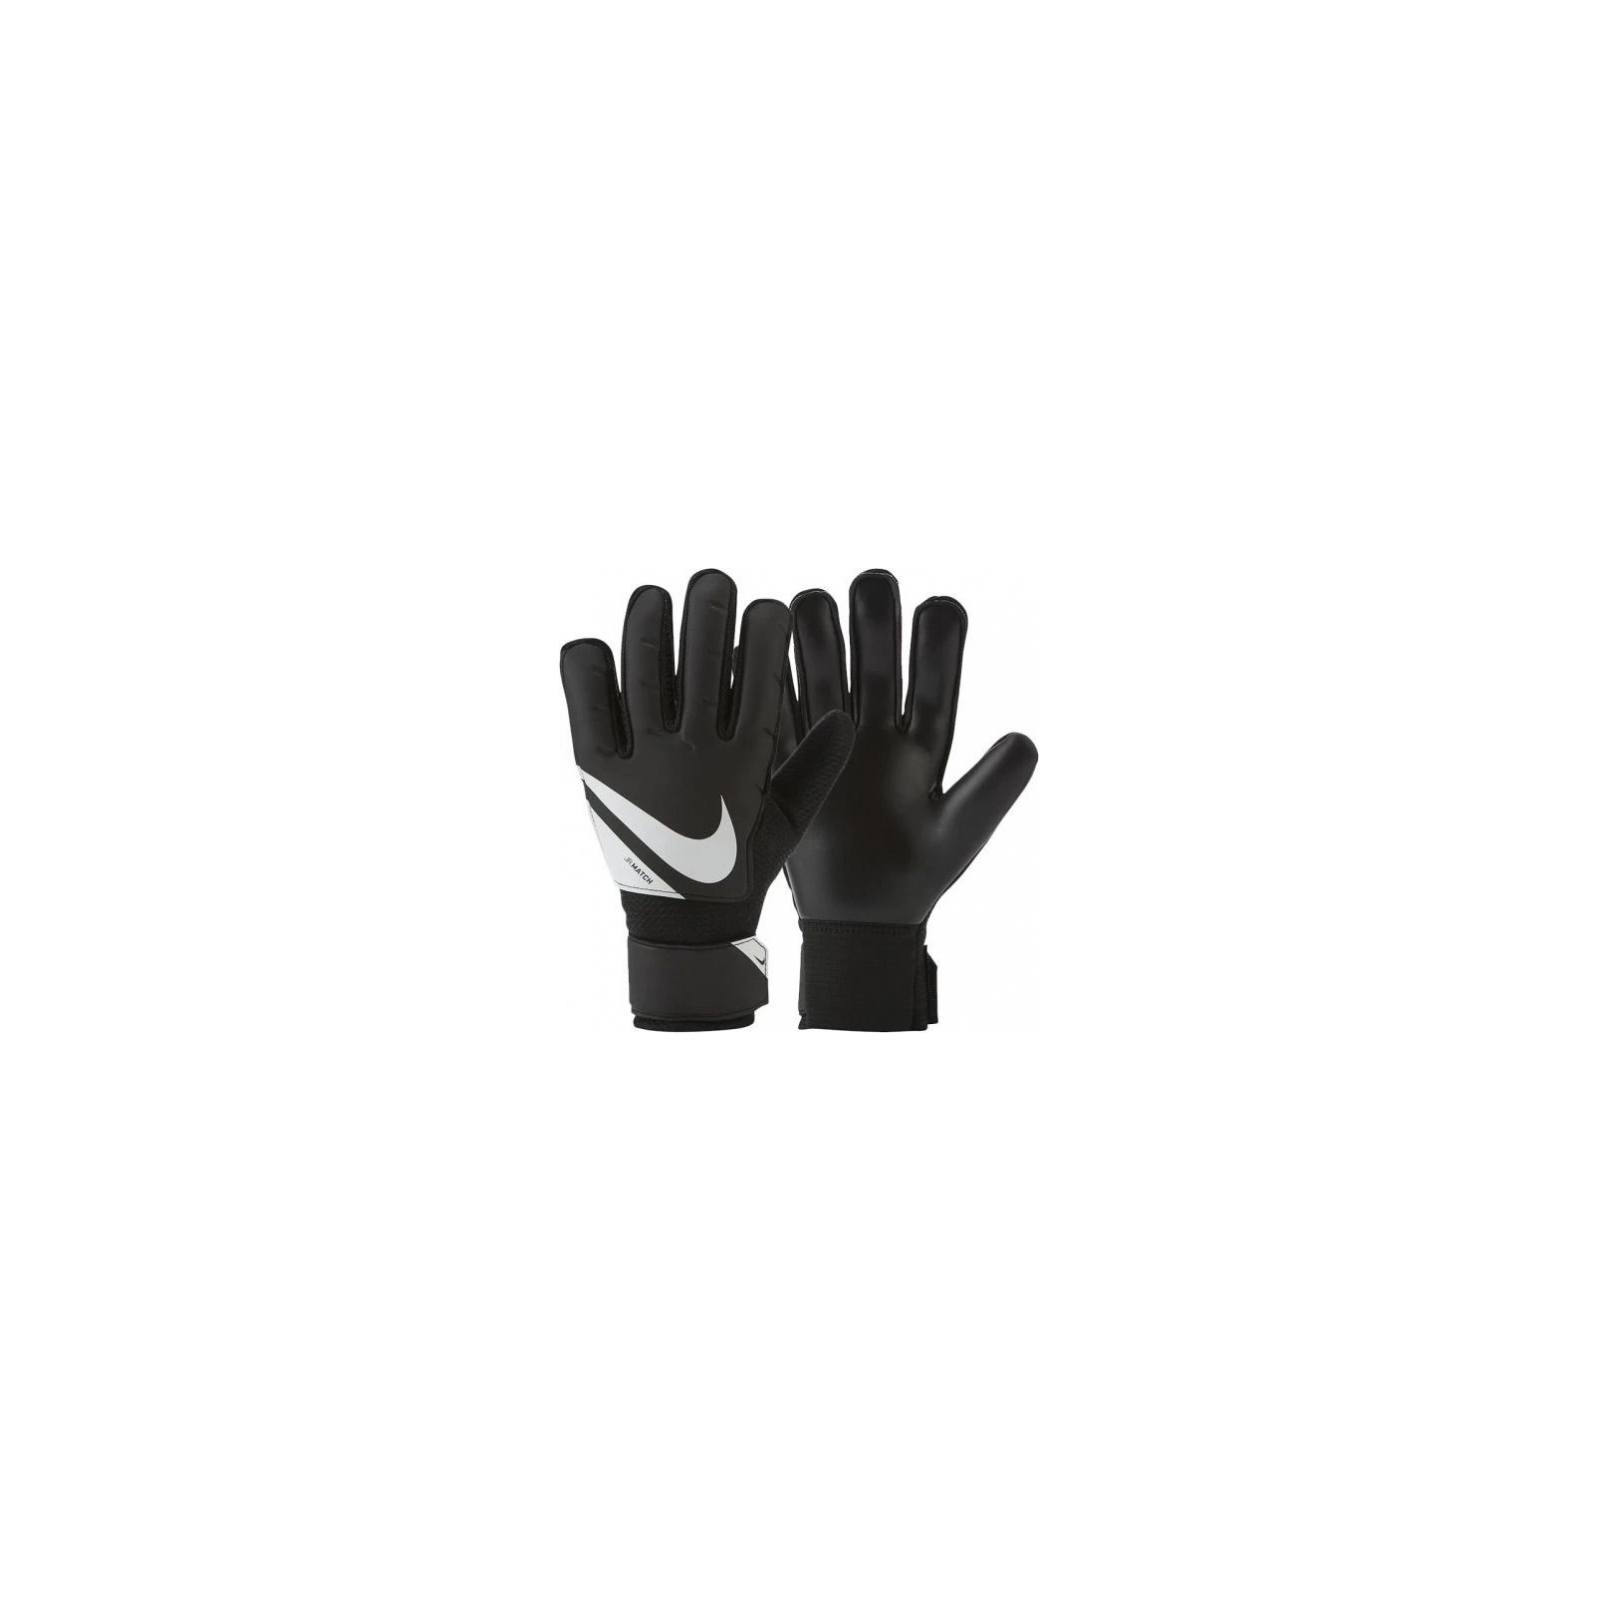 Вратарские перчатки Nike NK GK Match JR - FA20 CQ7795-010 чорний Діт 4 (194493919144)